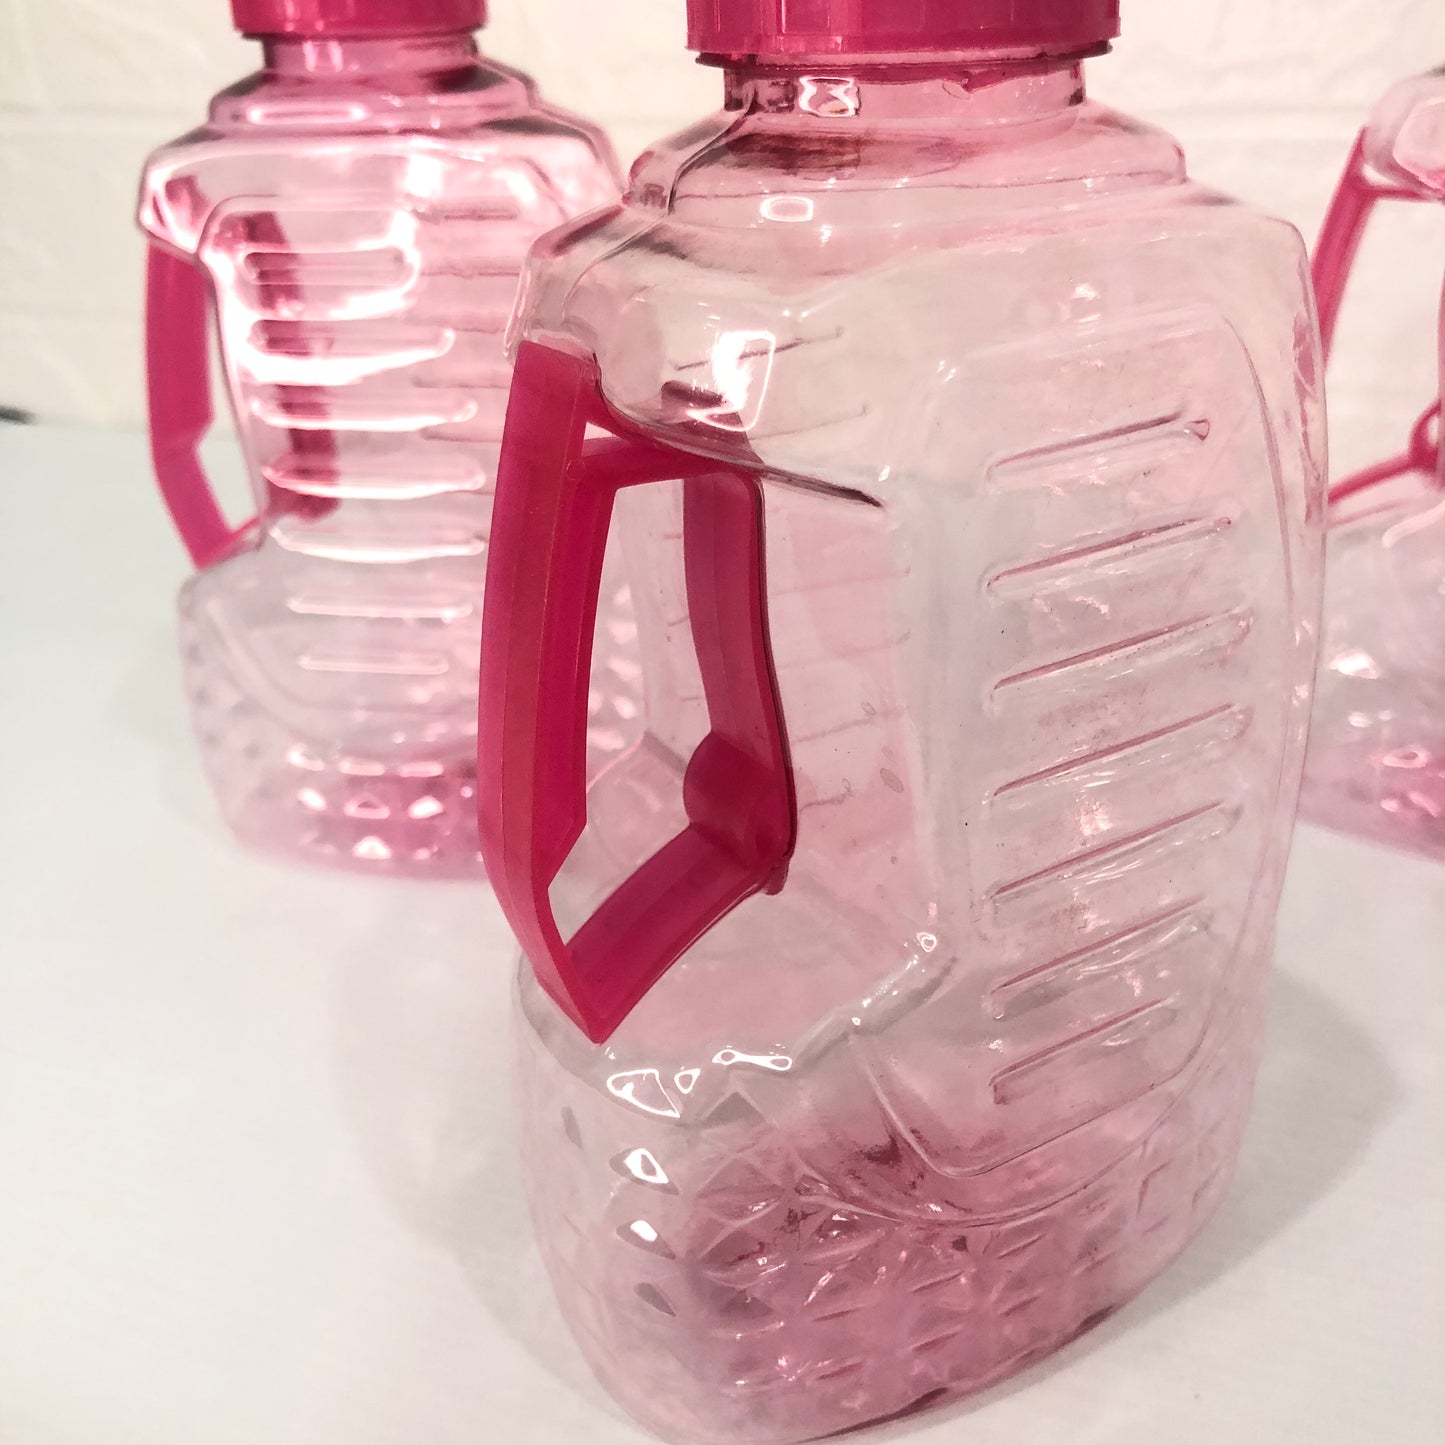 Pack Of 3 Plastic Fridge Water Bottle